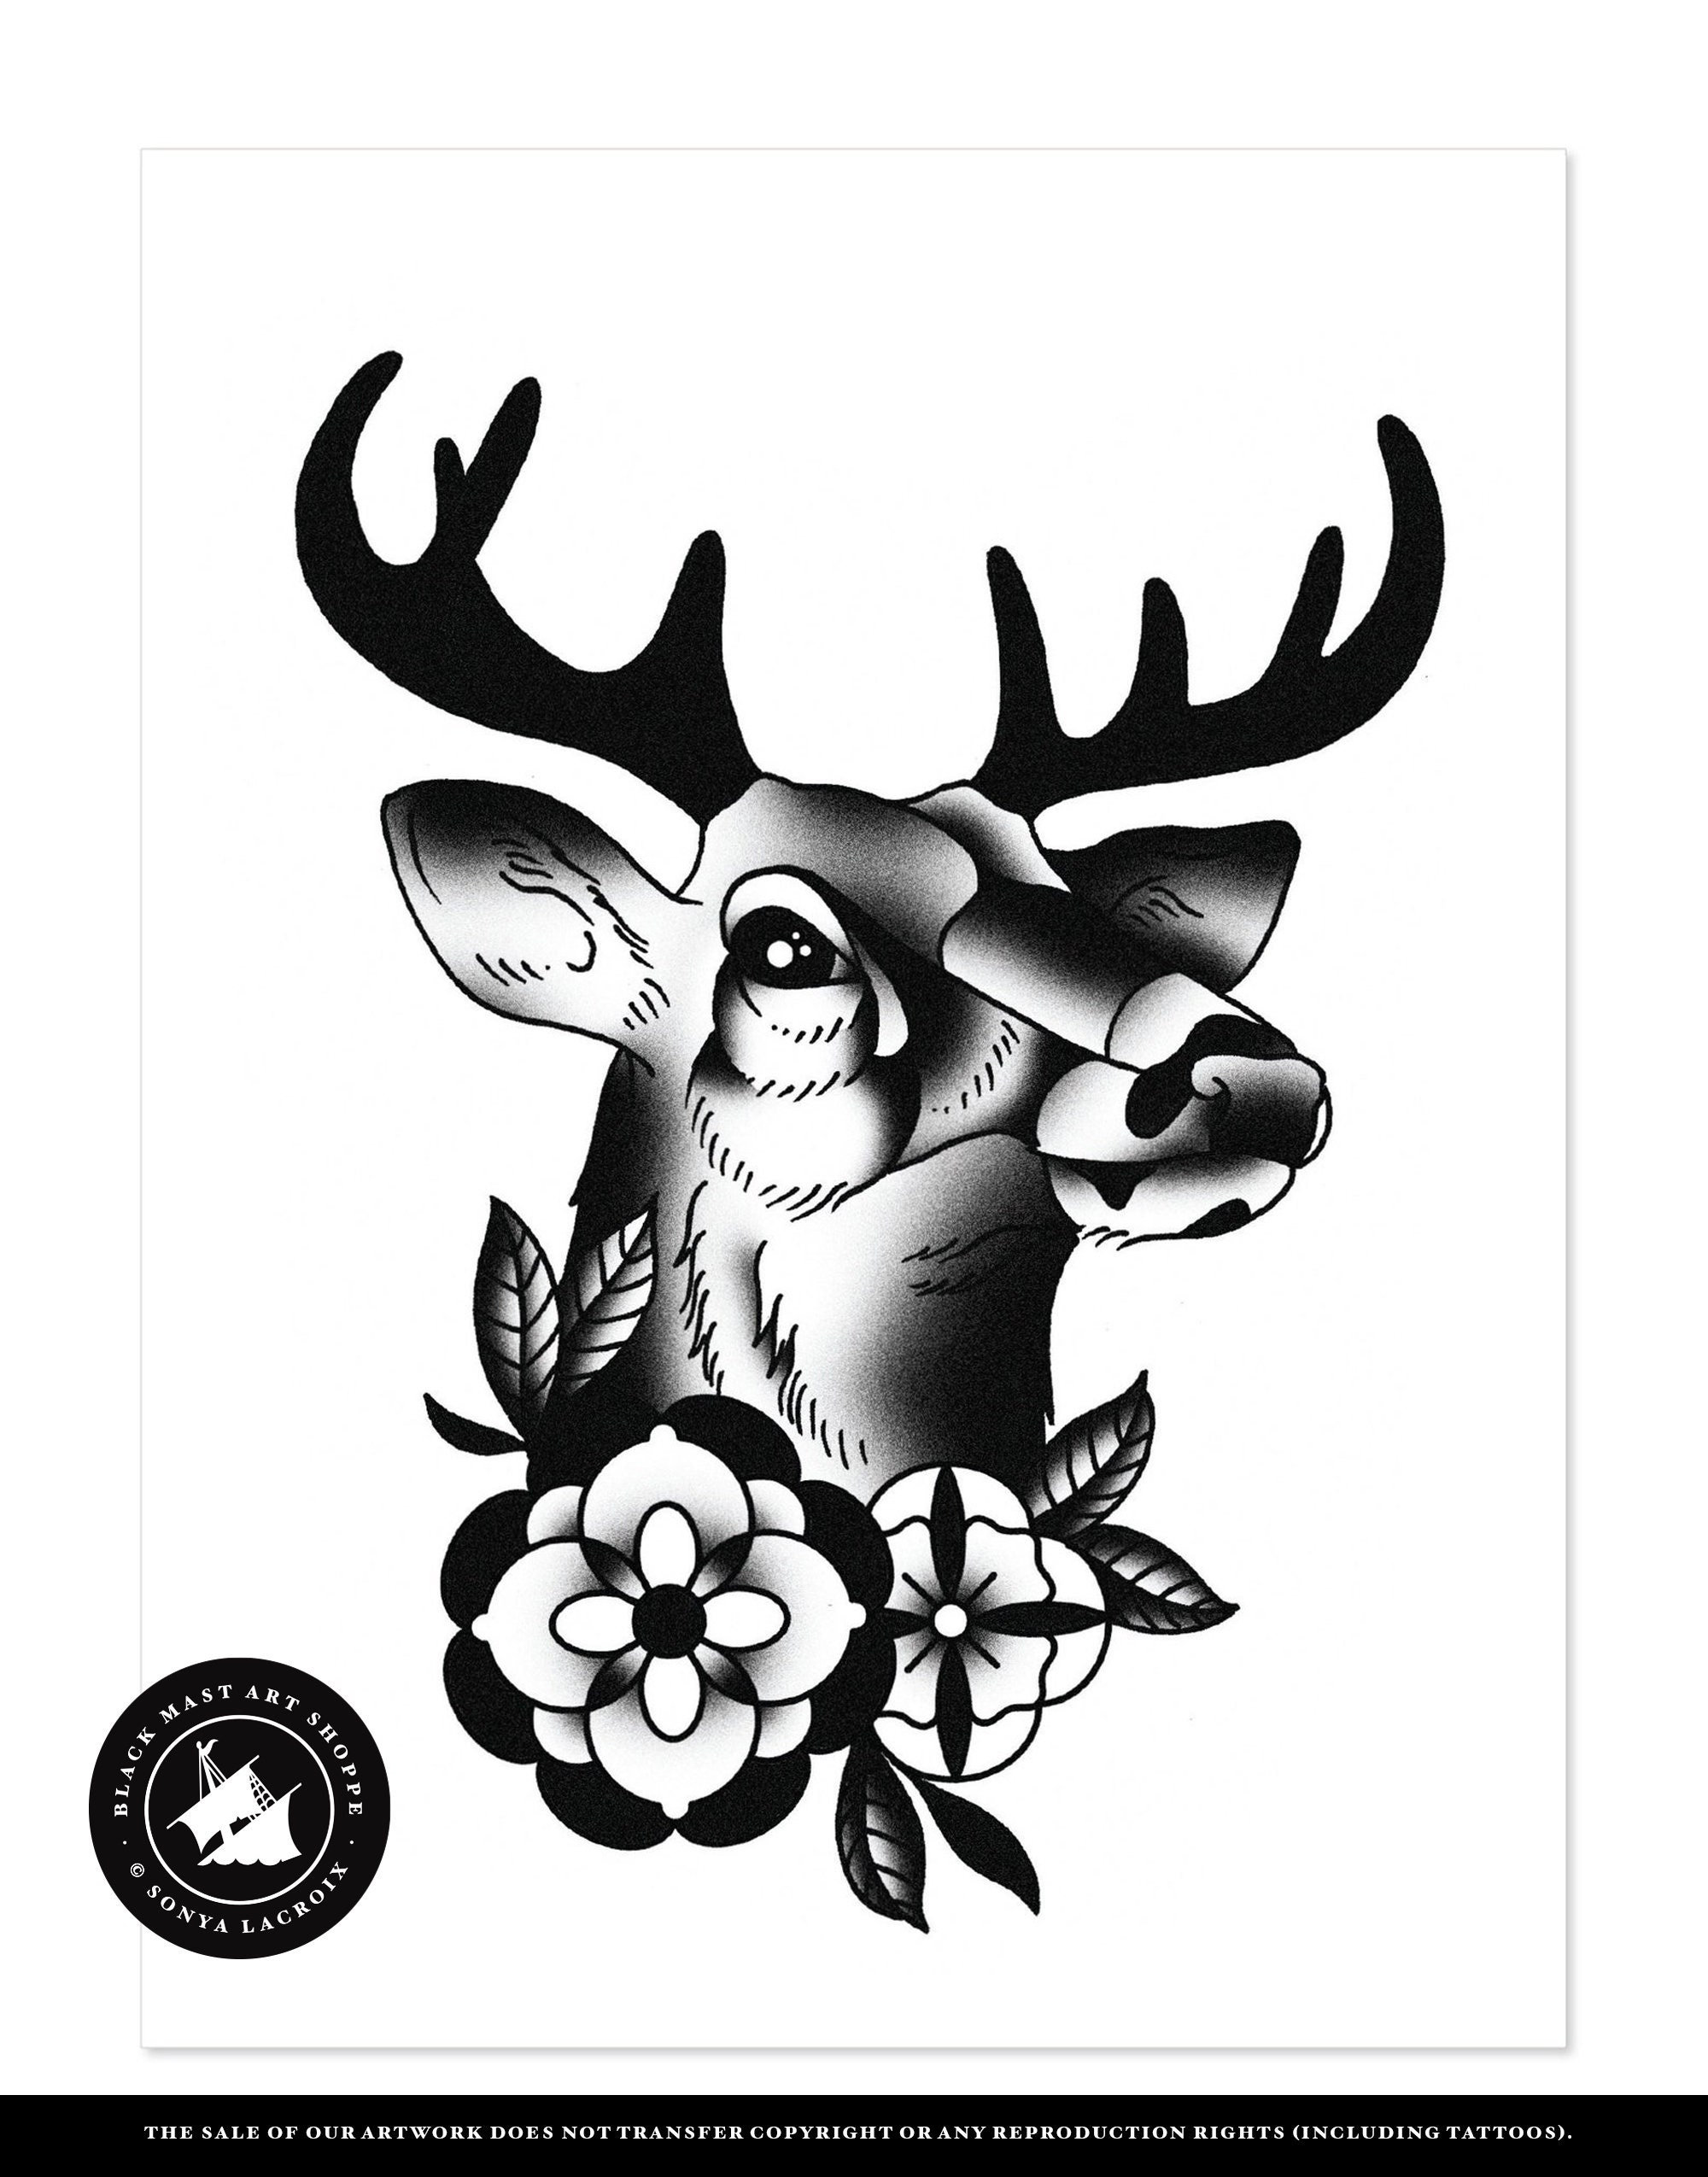 deer - tattoo design by PixieBMTH on DeviantArt